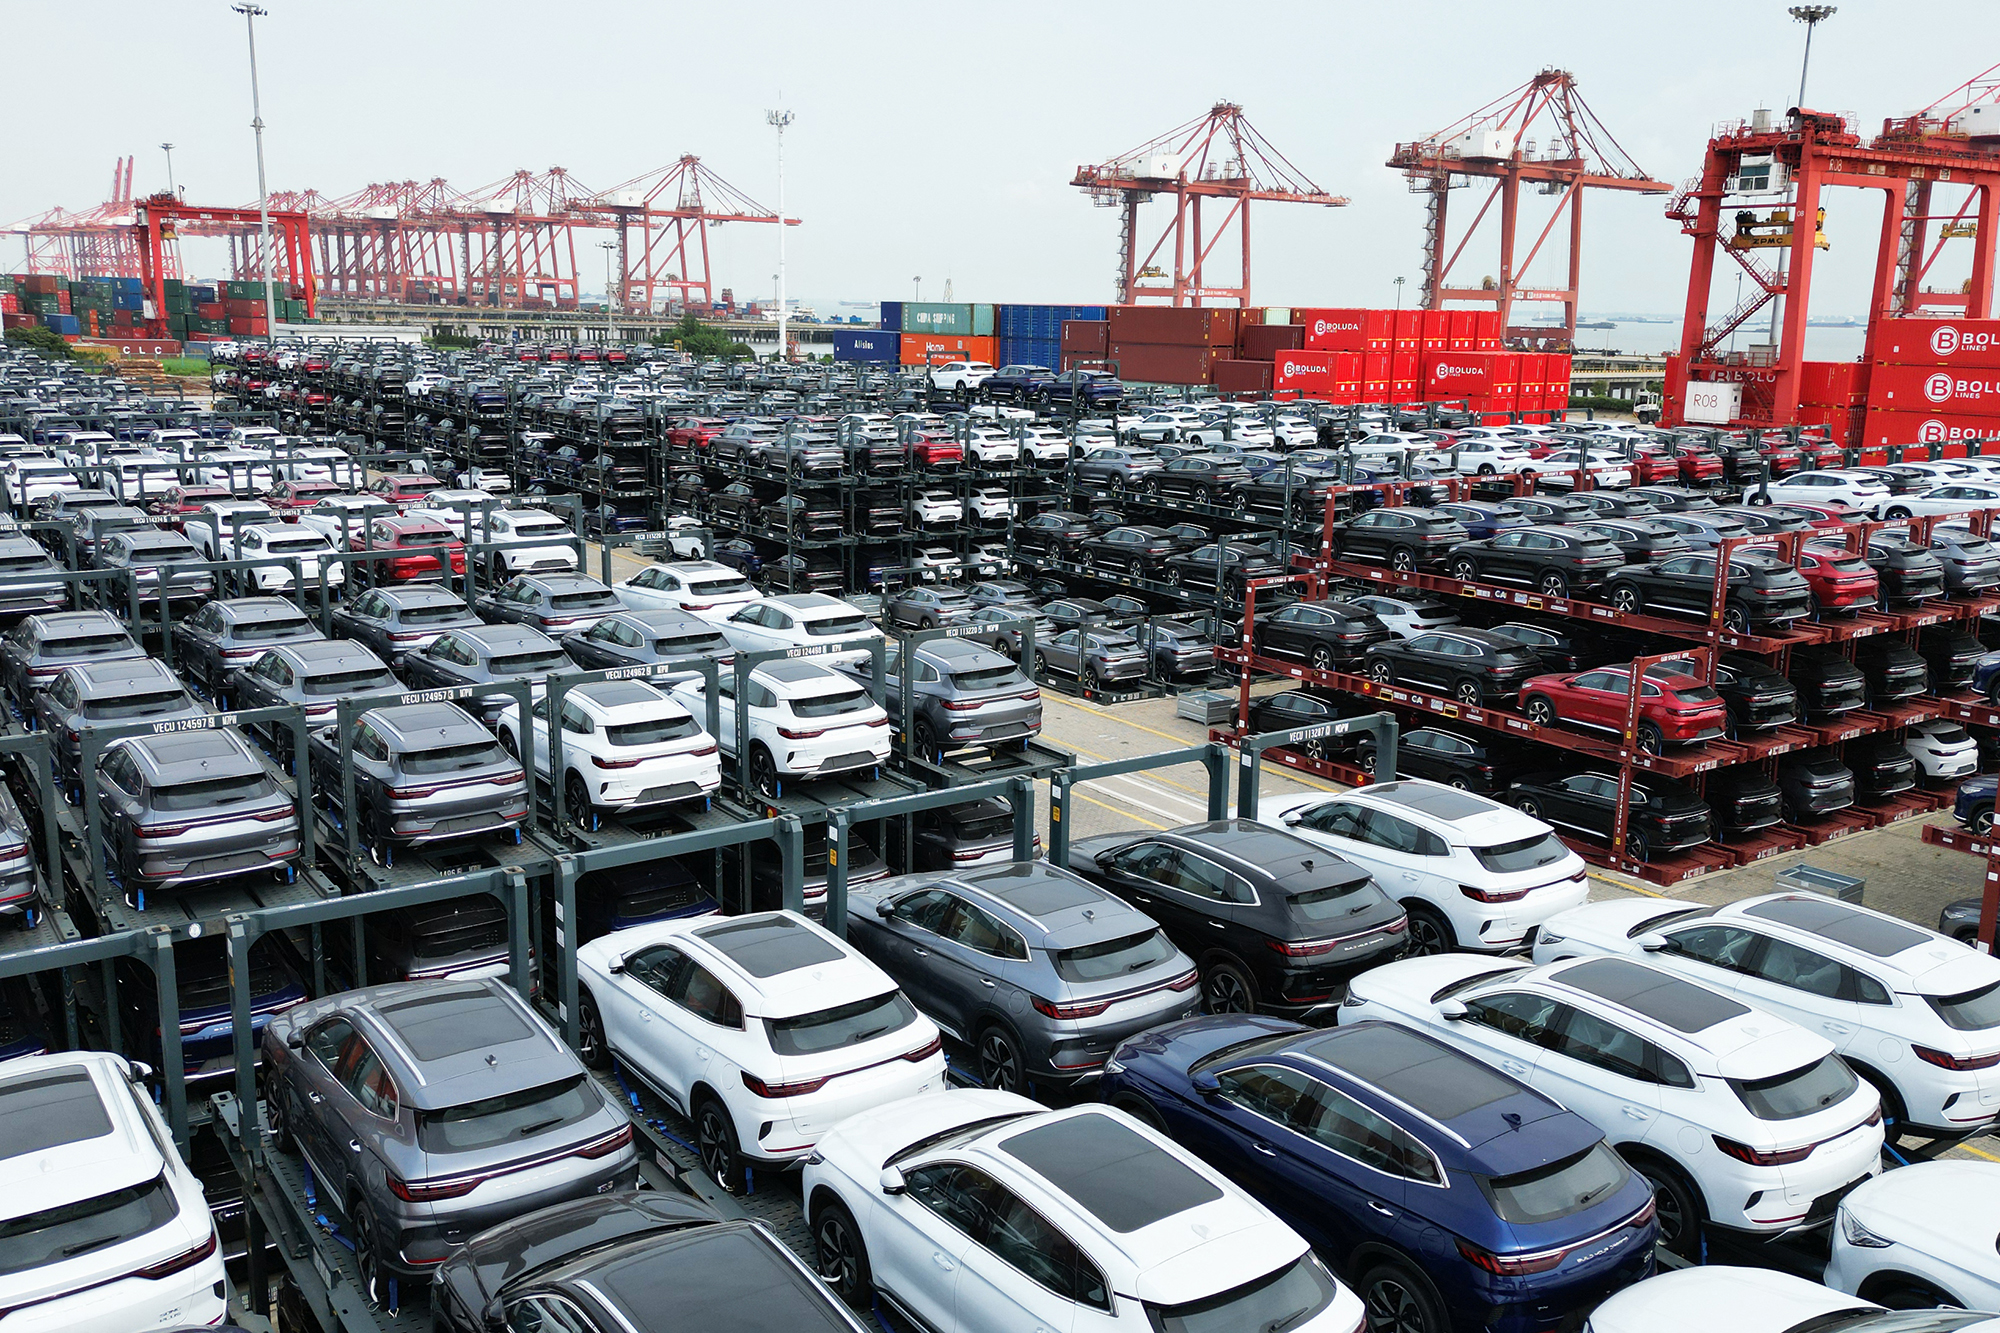 Elektroautos des chinesischen Herstellers BYD warten im internationalen Containerterminal im Hafen von Suzhou in Ostchina auf ihre Verladung (Bild: AFP)